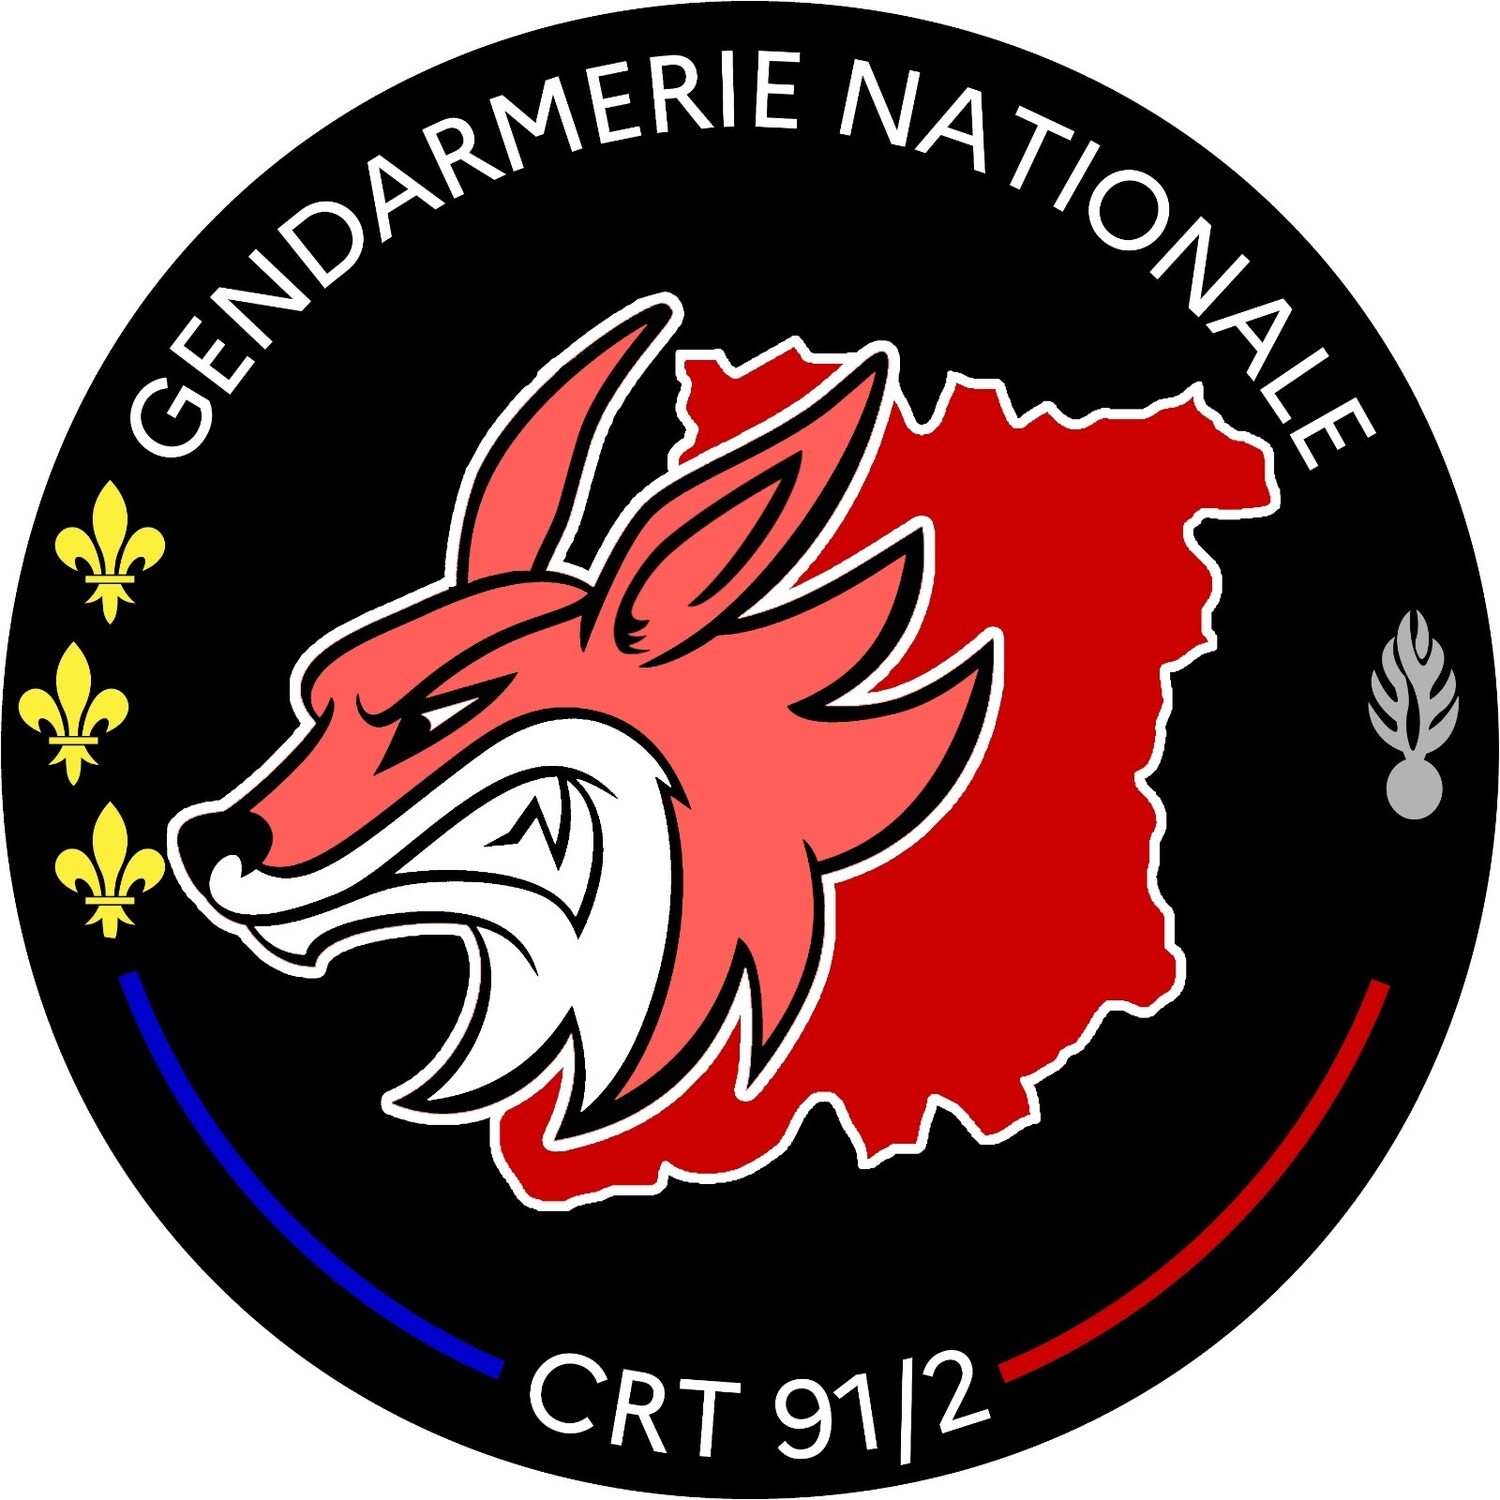 Rondache Compagnie de Réserve Territoriale 91/2